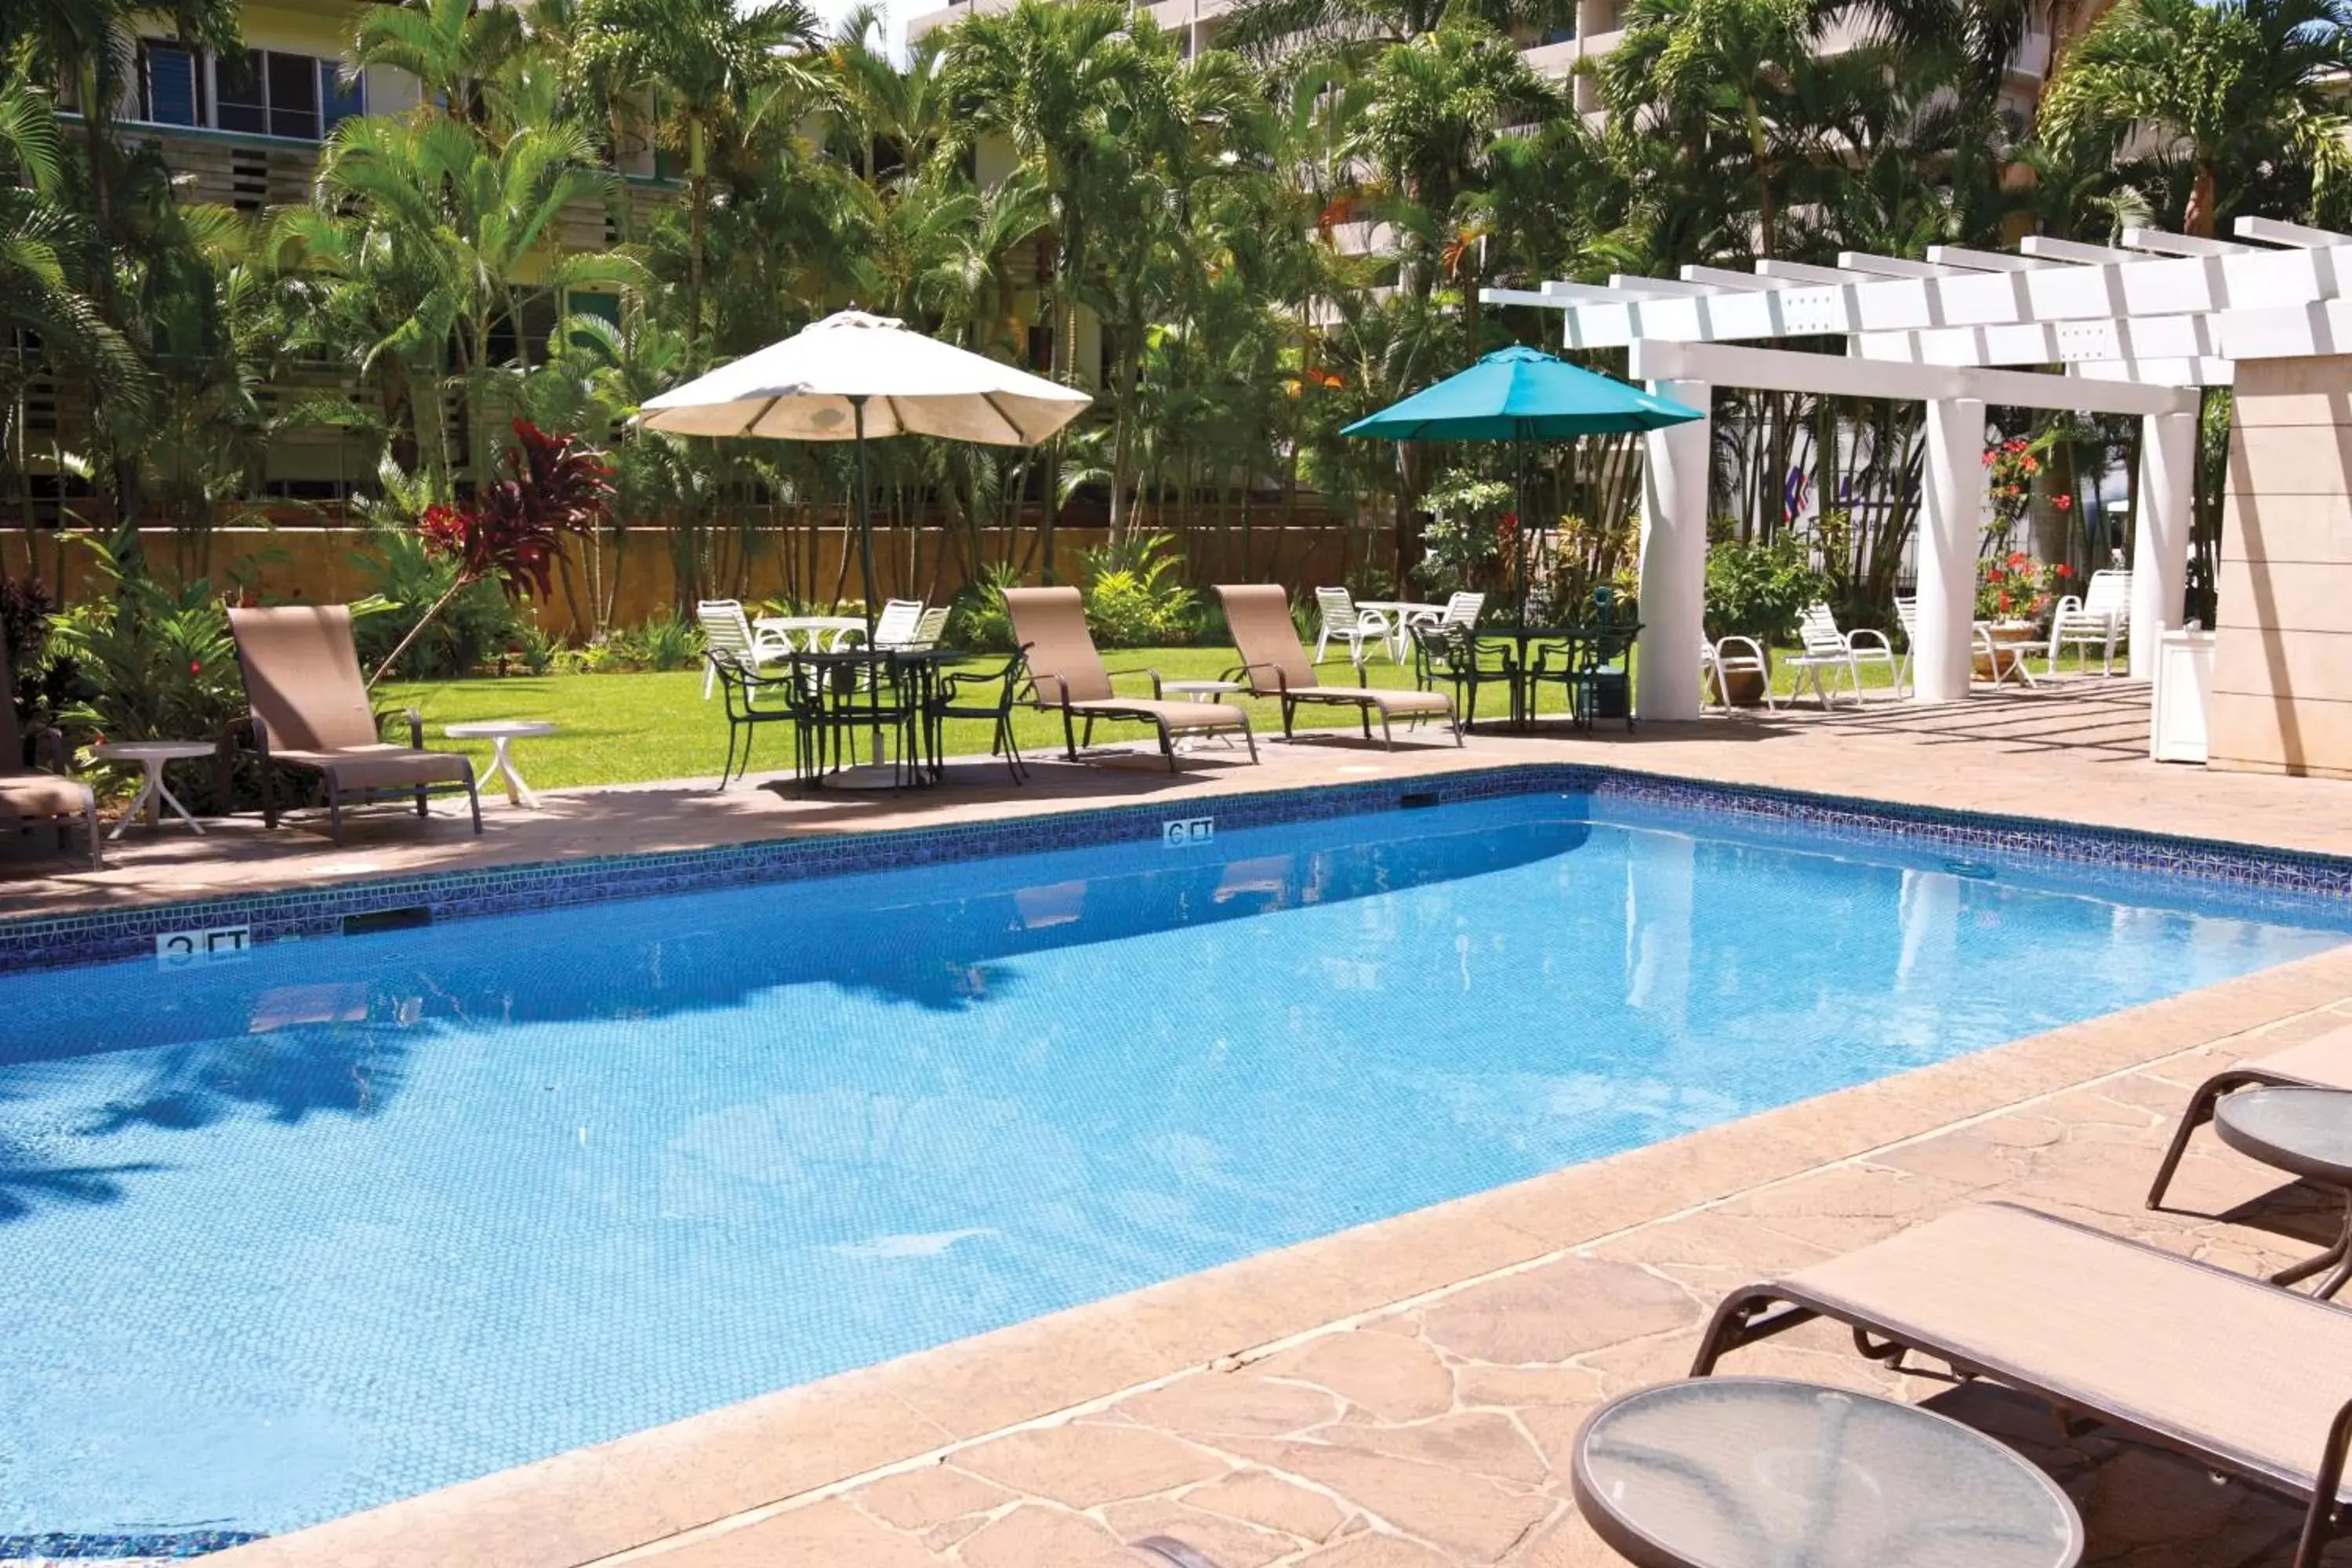 Swimming Pool in Wyndham Vacation Resorts Royal Garden at Waikiki